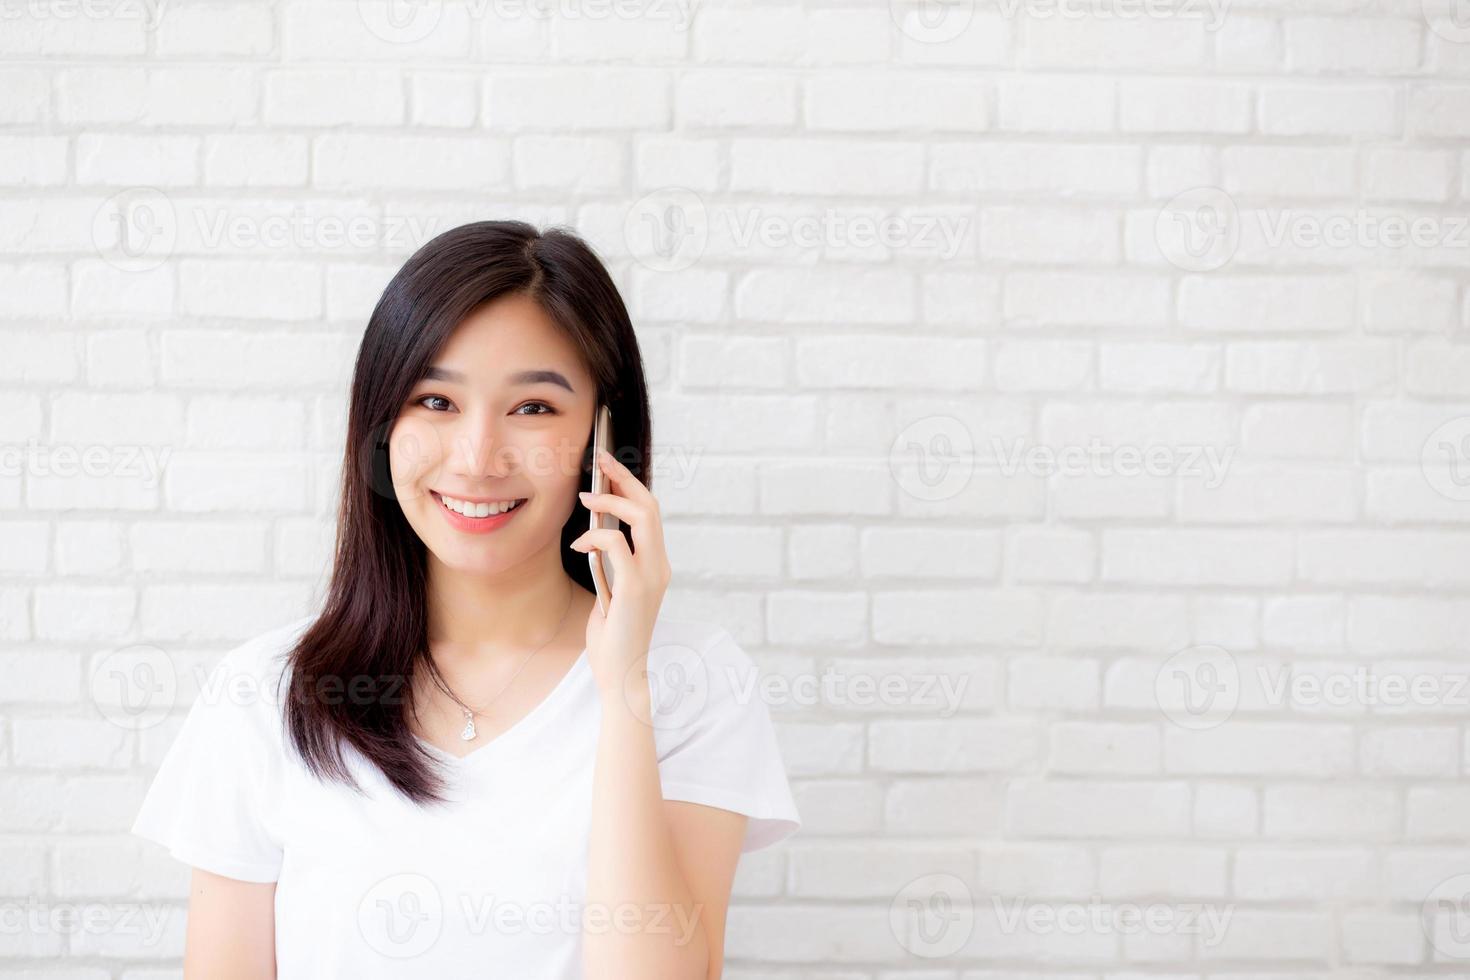 schön des Porträts junge asiatische Frau spricht über Smartphone und lächelt auf Zementsteinhintergrund, freiberuflich tätiges weibliches Telefon, Kommunikation des mobilen Konzepts. foto